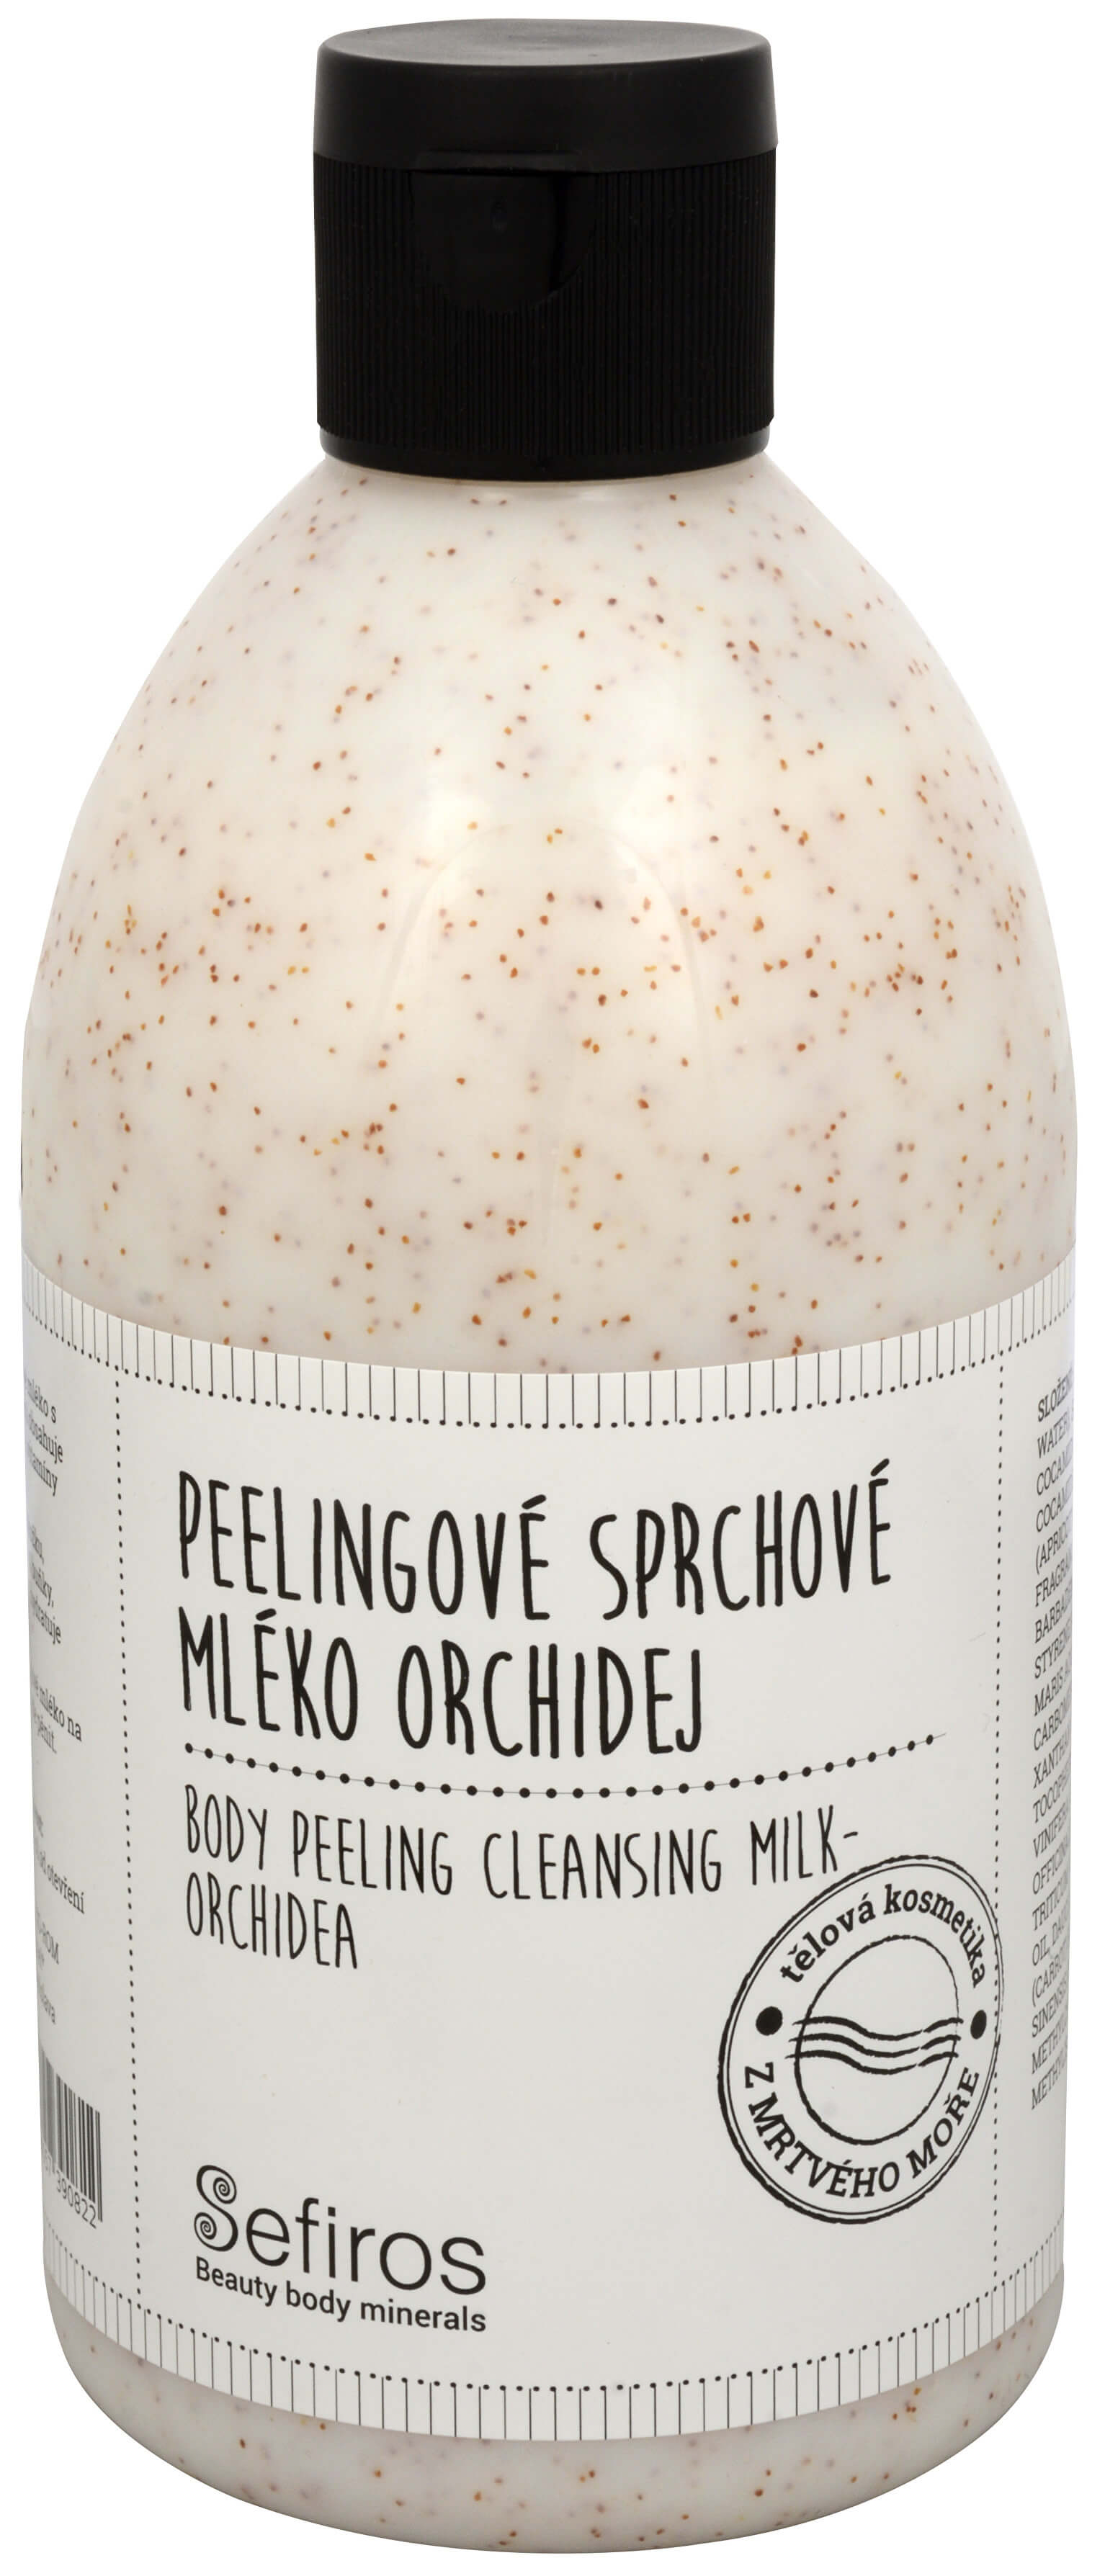 Zobrazit detail výrobku Sefiross Peelingové sprchové mléko Orchidej (Body Peeling Cleansing Milk) 500 ml